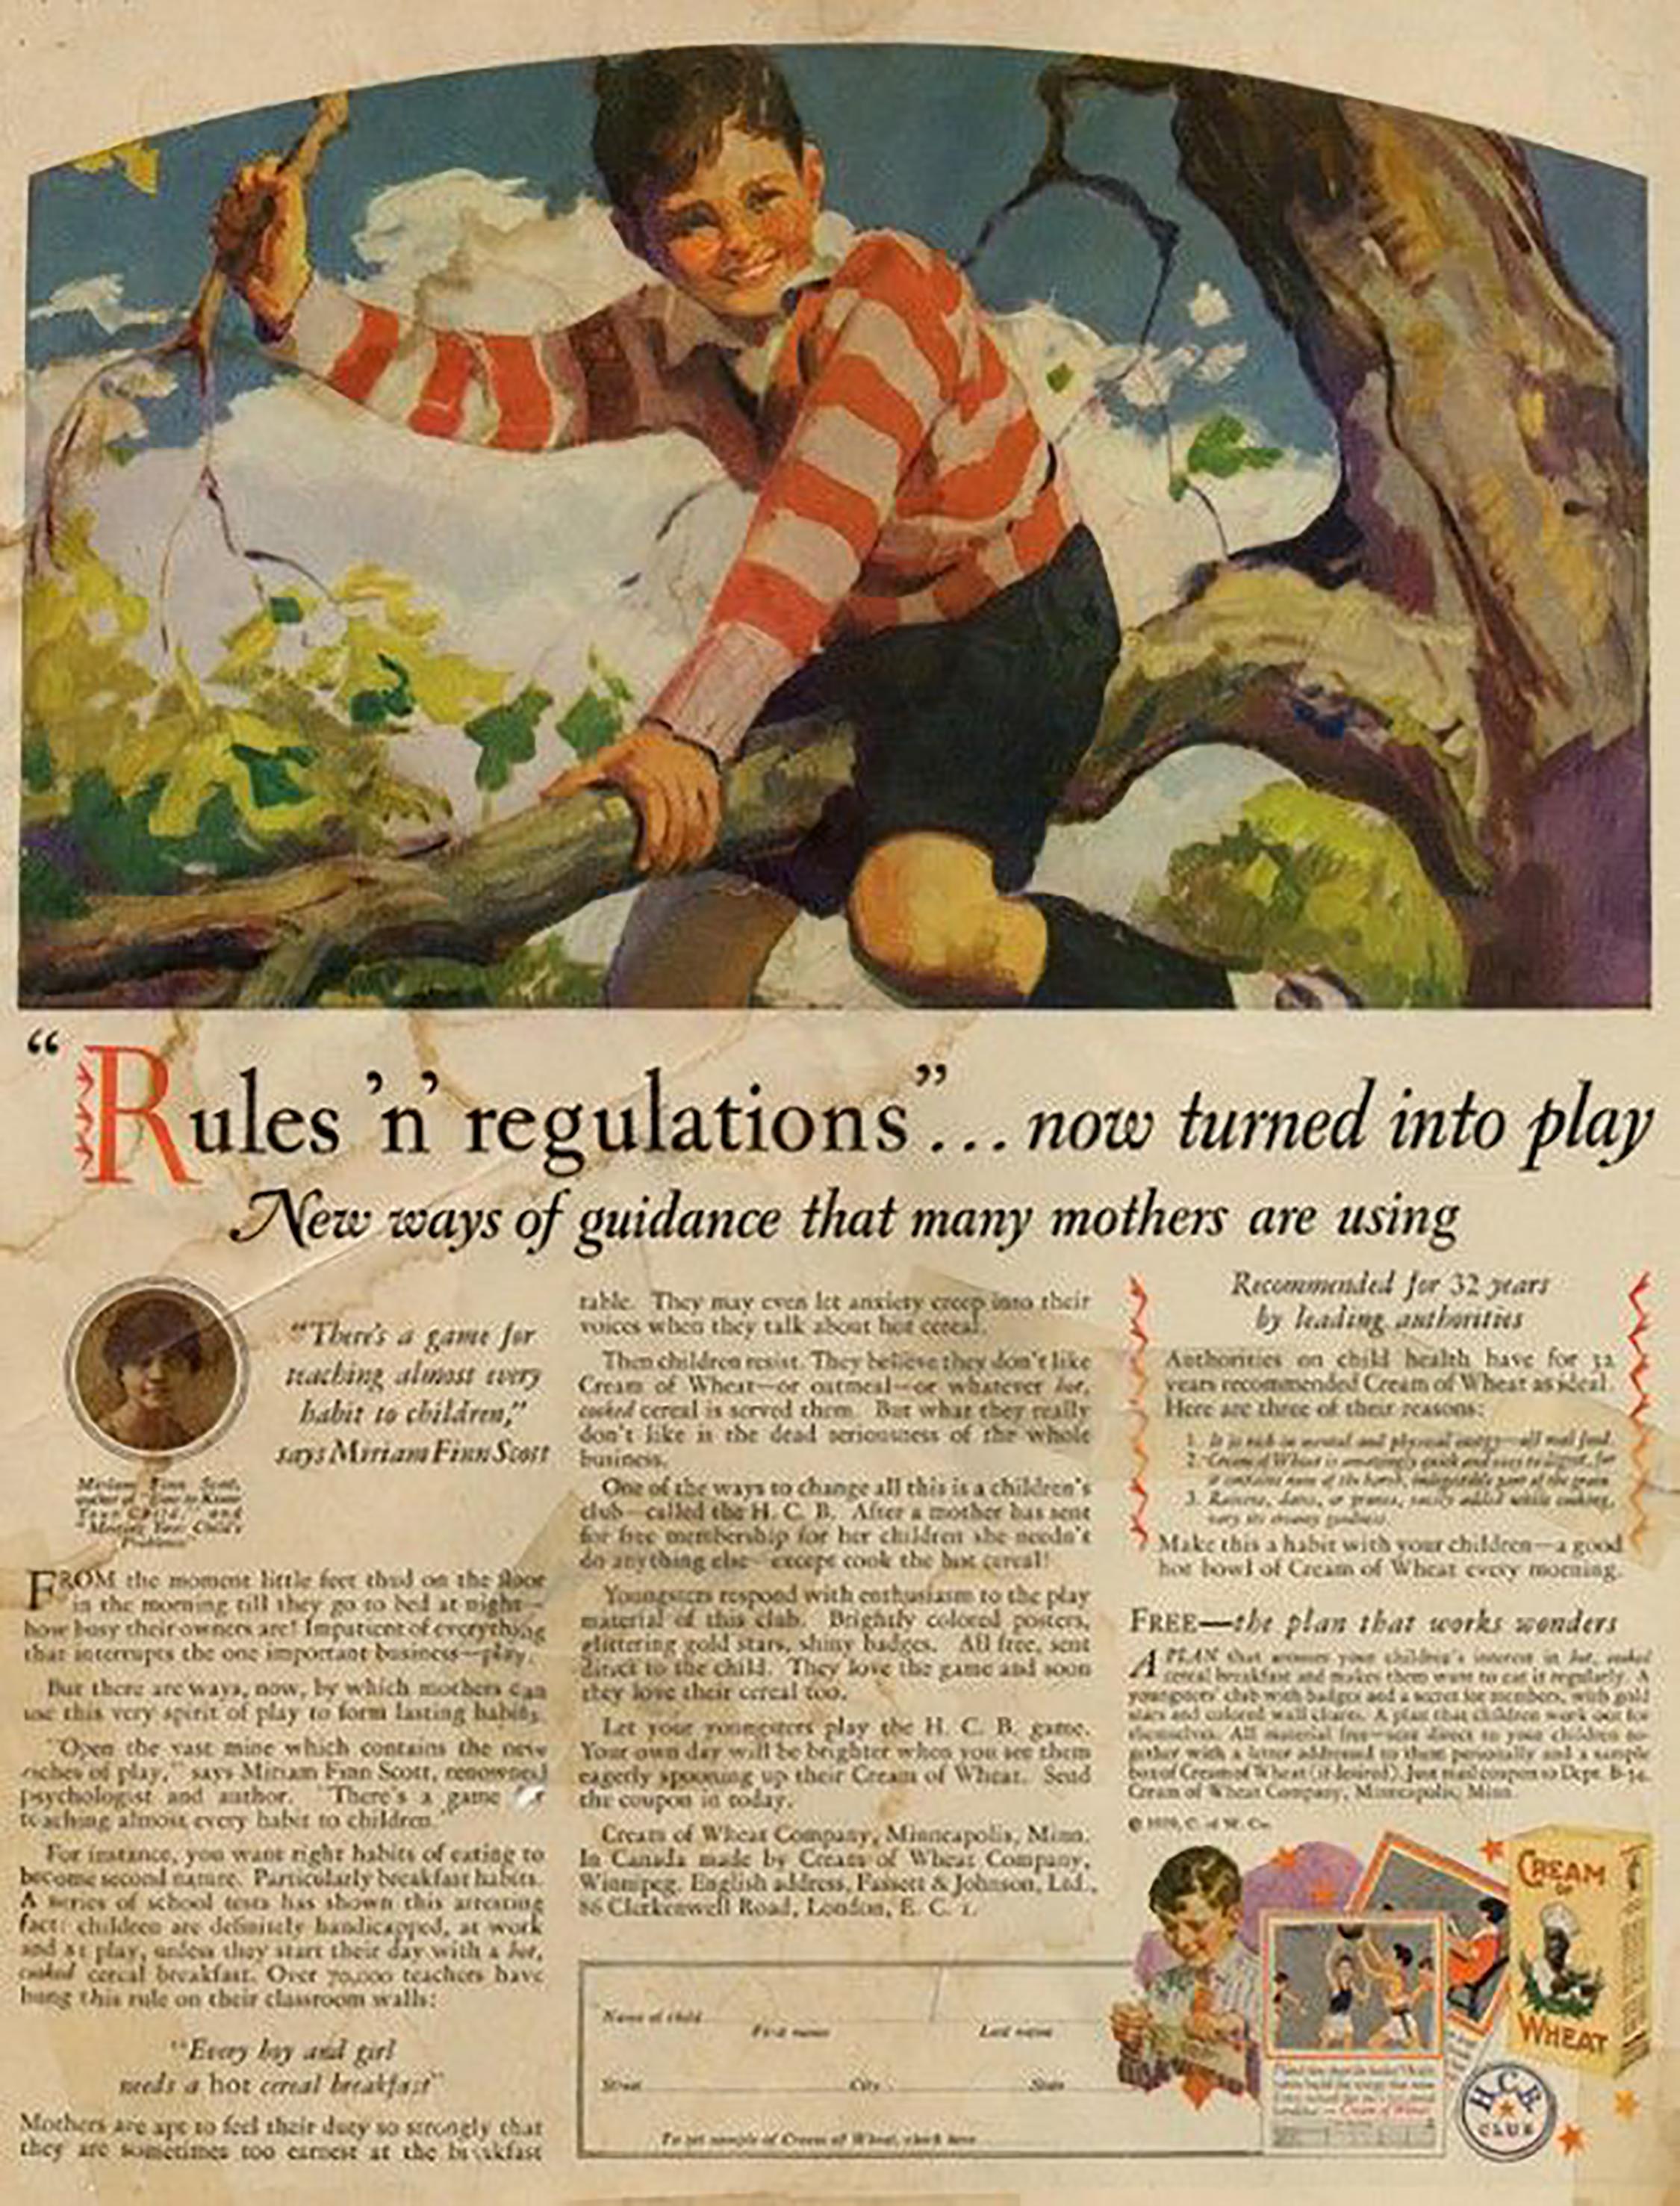 Boy in Striped Sweater assis sur une branche d'arbre, publicité, Crème de blé, 1929 - Painting de Haddon Hubbard Sundblom